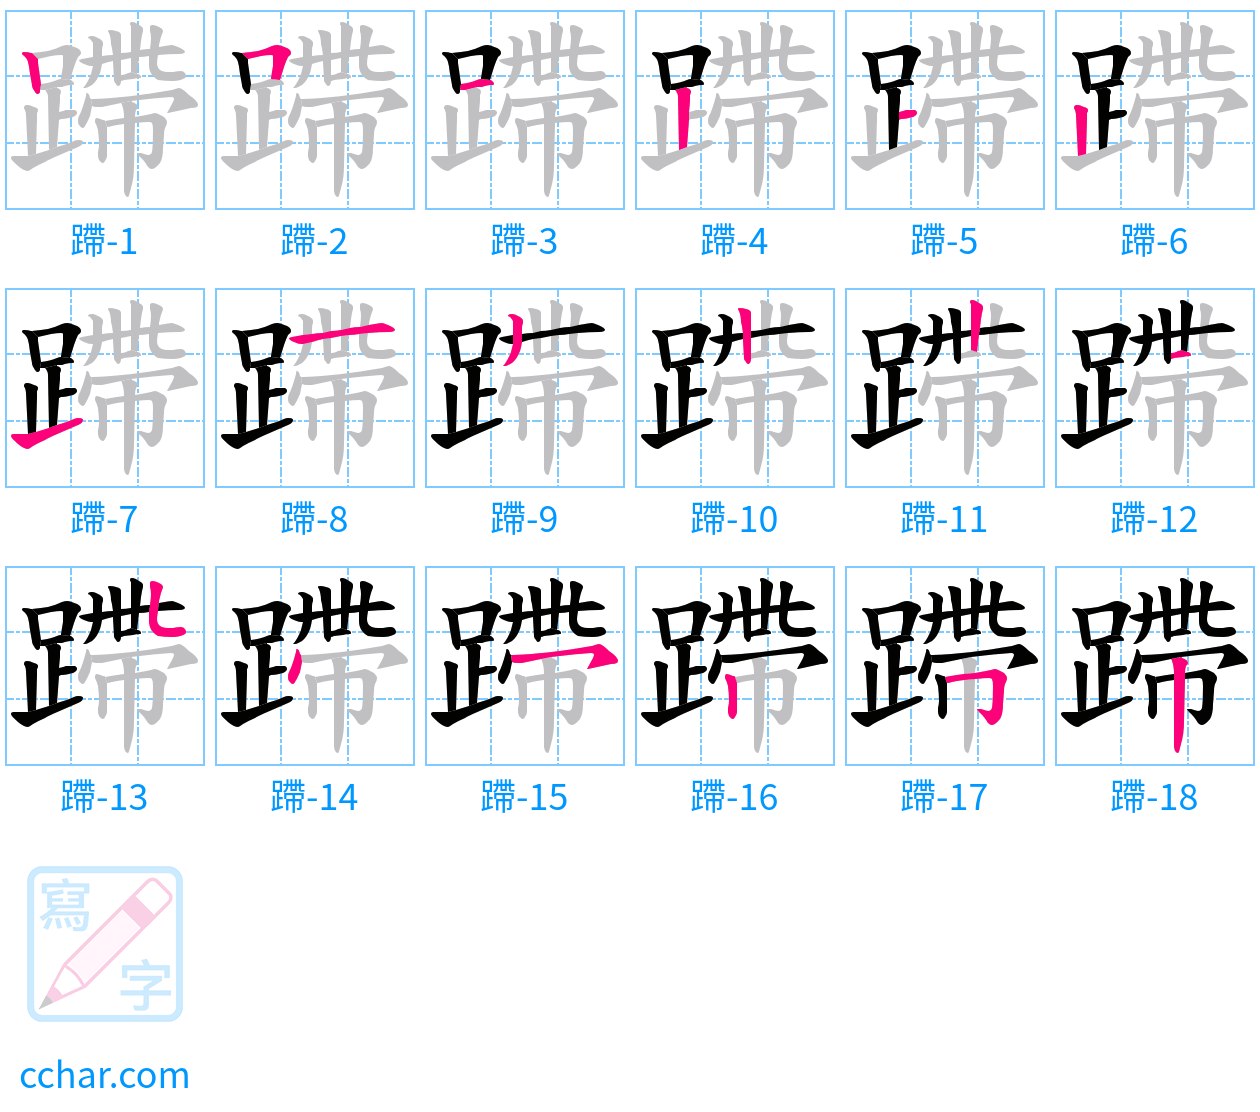 蹛 stroke order step-by-step diagram